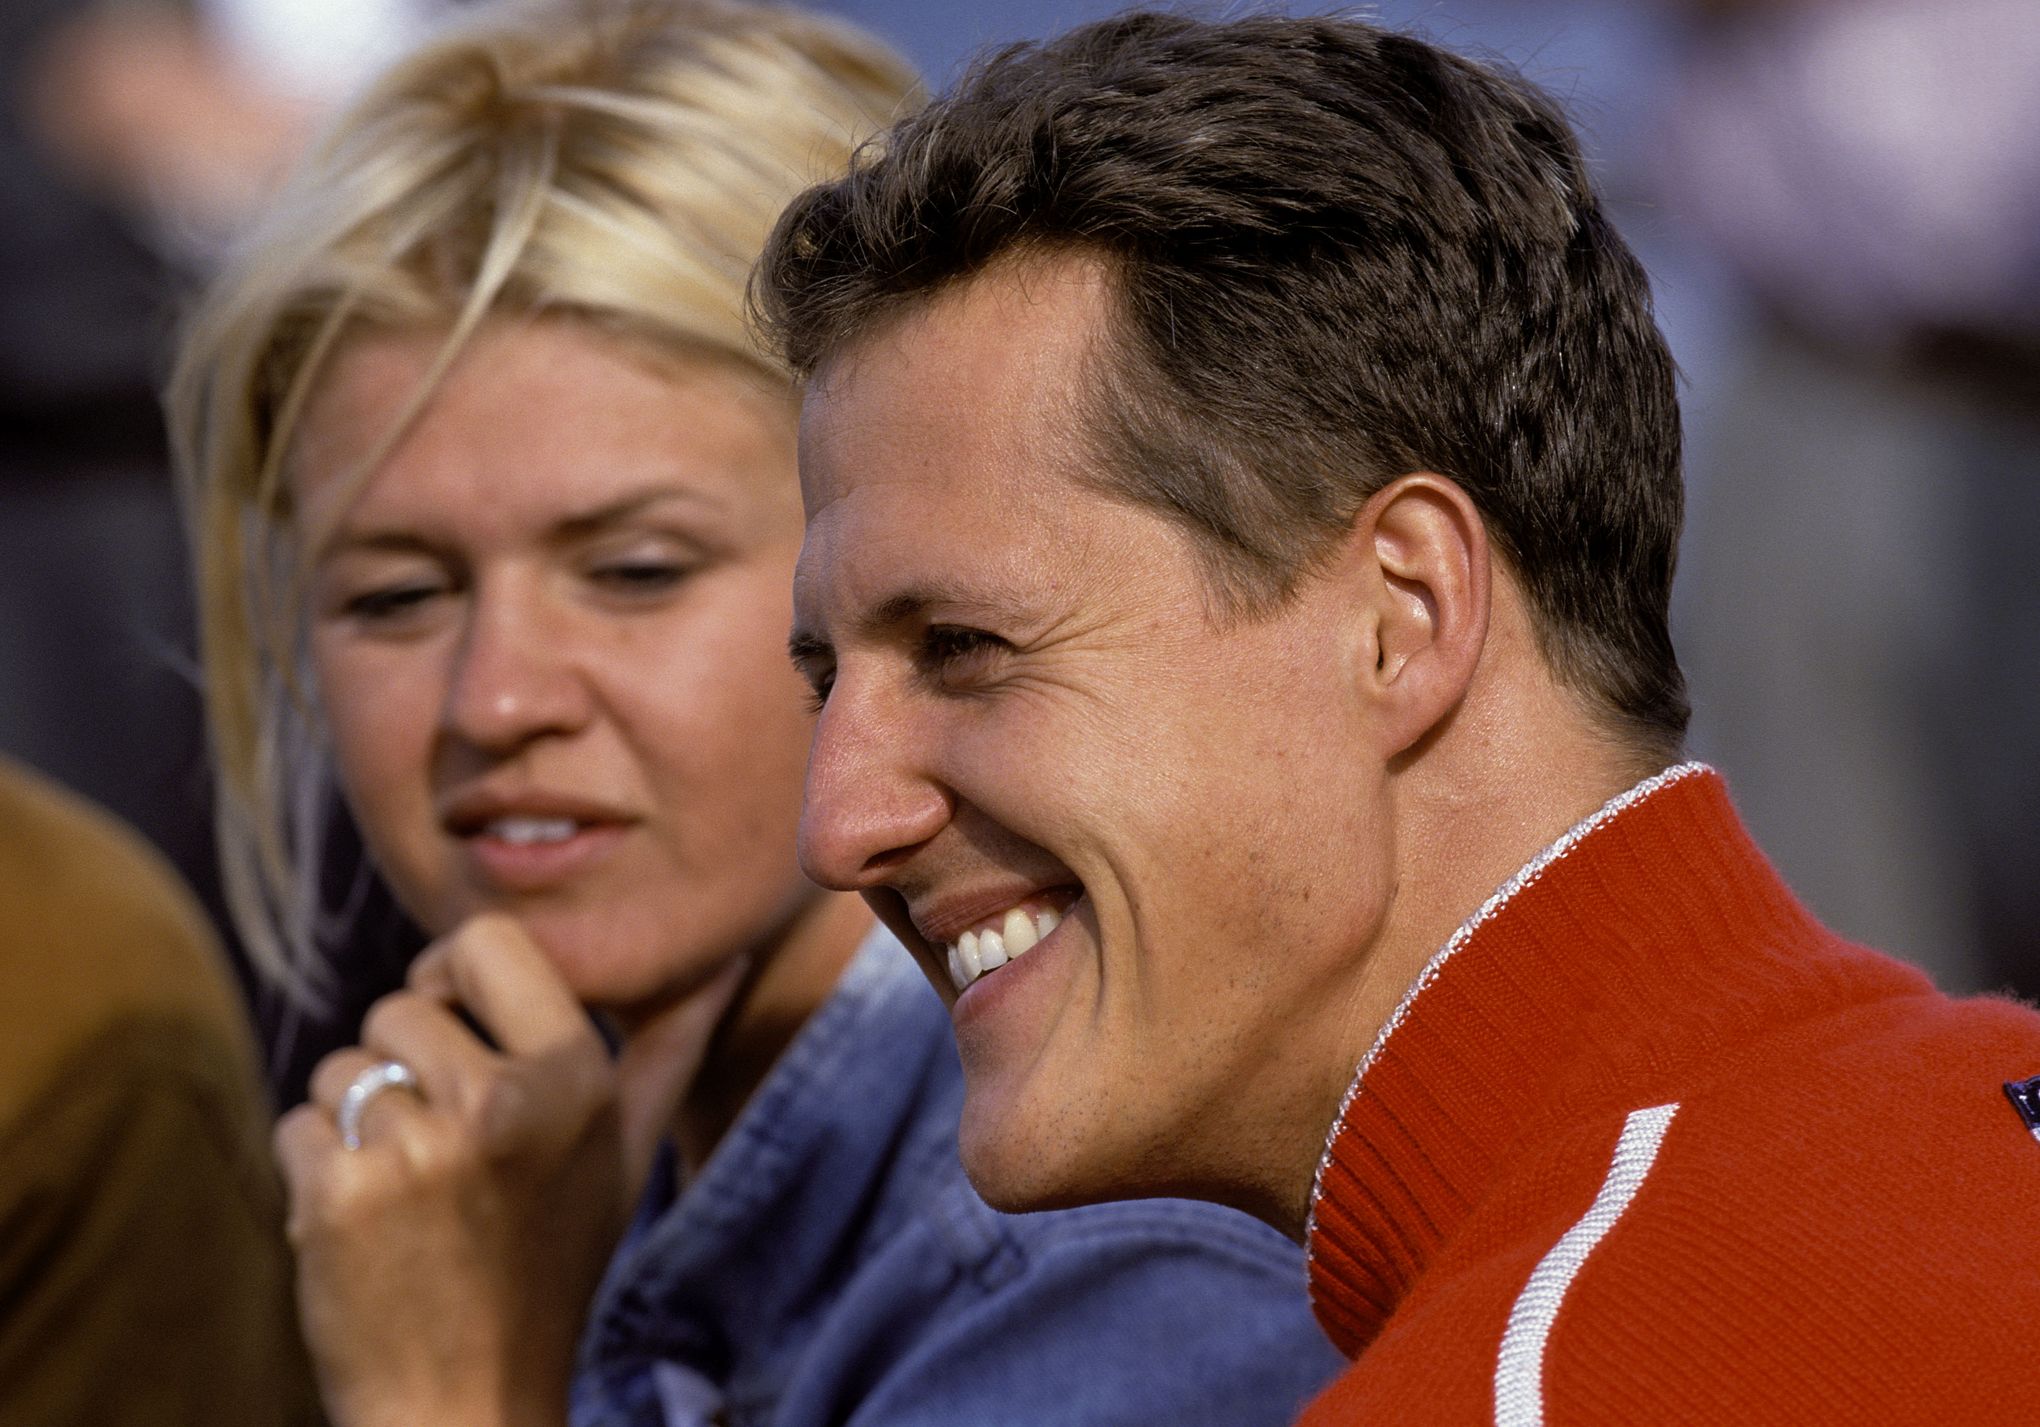 Michael Schumacher est entre les meilleures mains selon sa famille